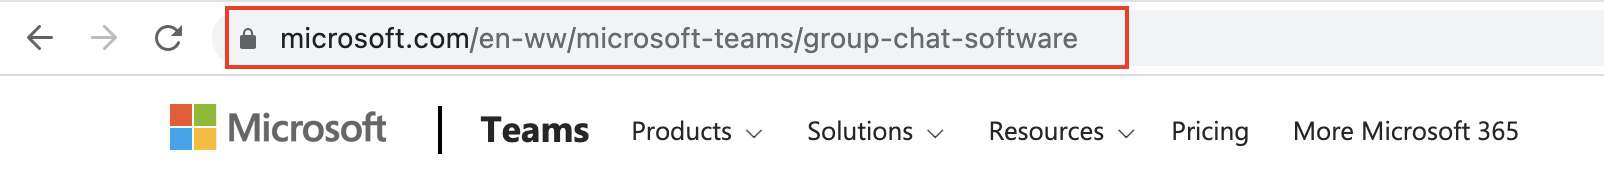 የ Microsoft Teams መተግበሪያን በዴስክቶፕዎ ላይ እንዴት ማውረድ እንደሚችሉ